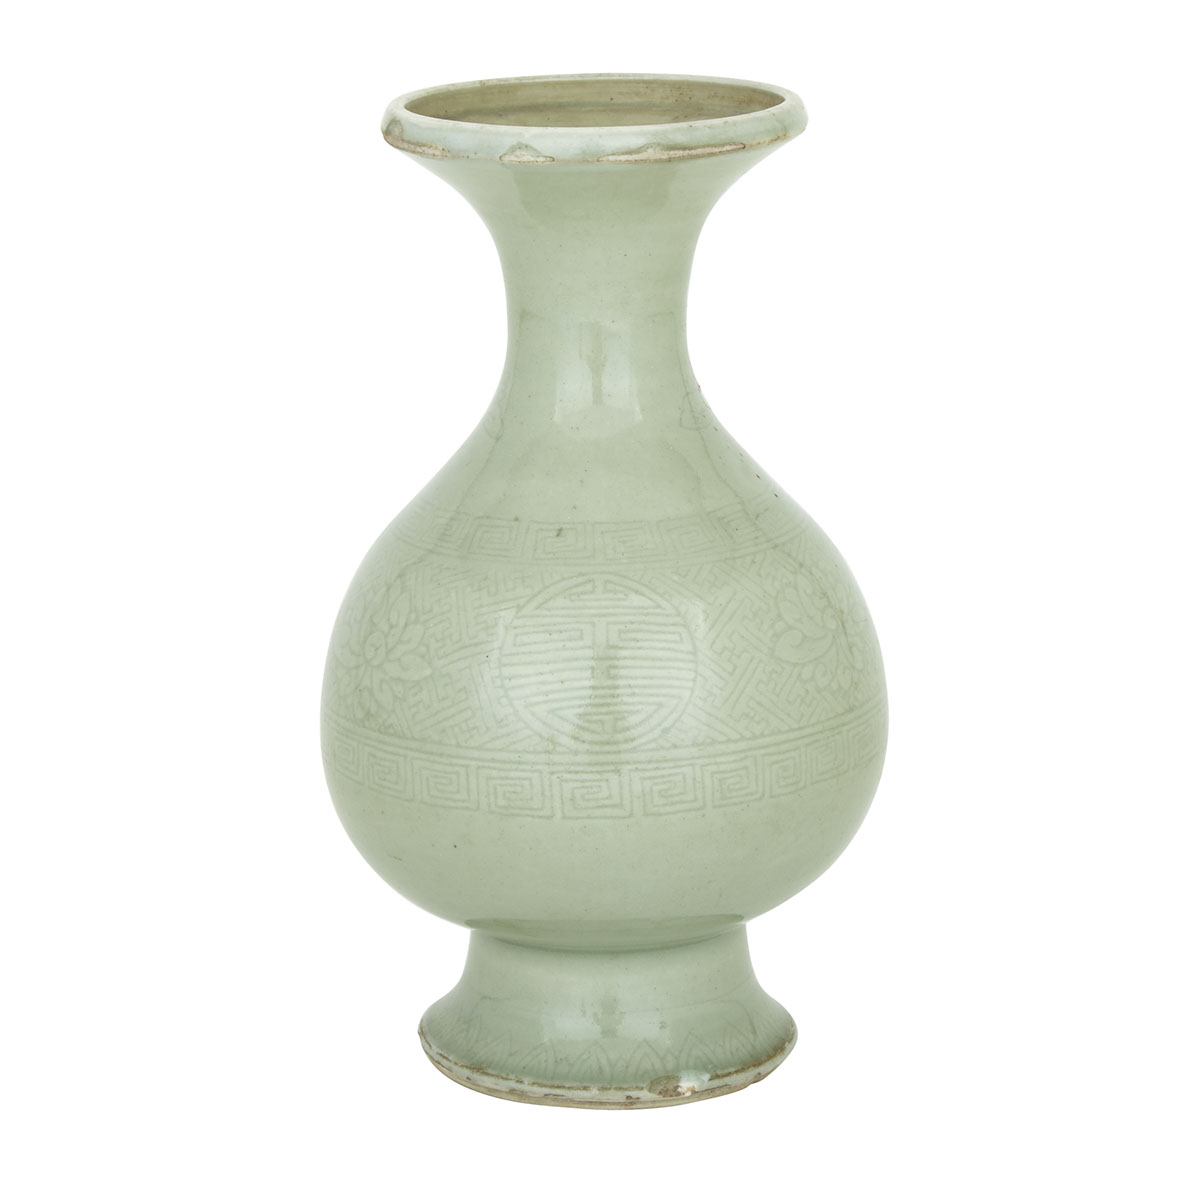 Celadon Glazed ‘Shou’ Vase, Kangxi Period (1662-1722)